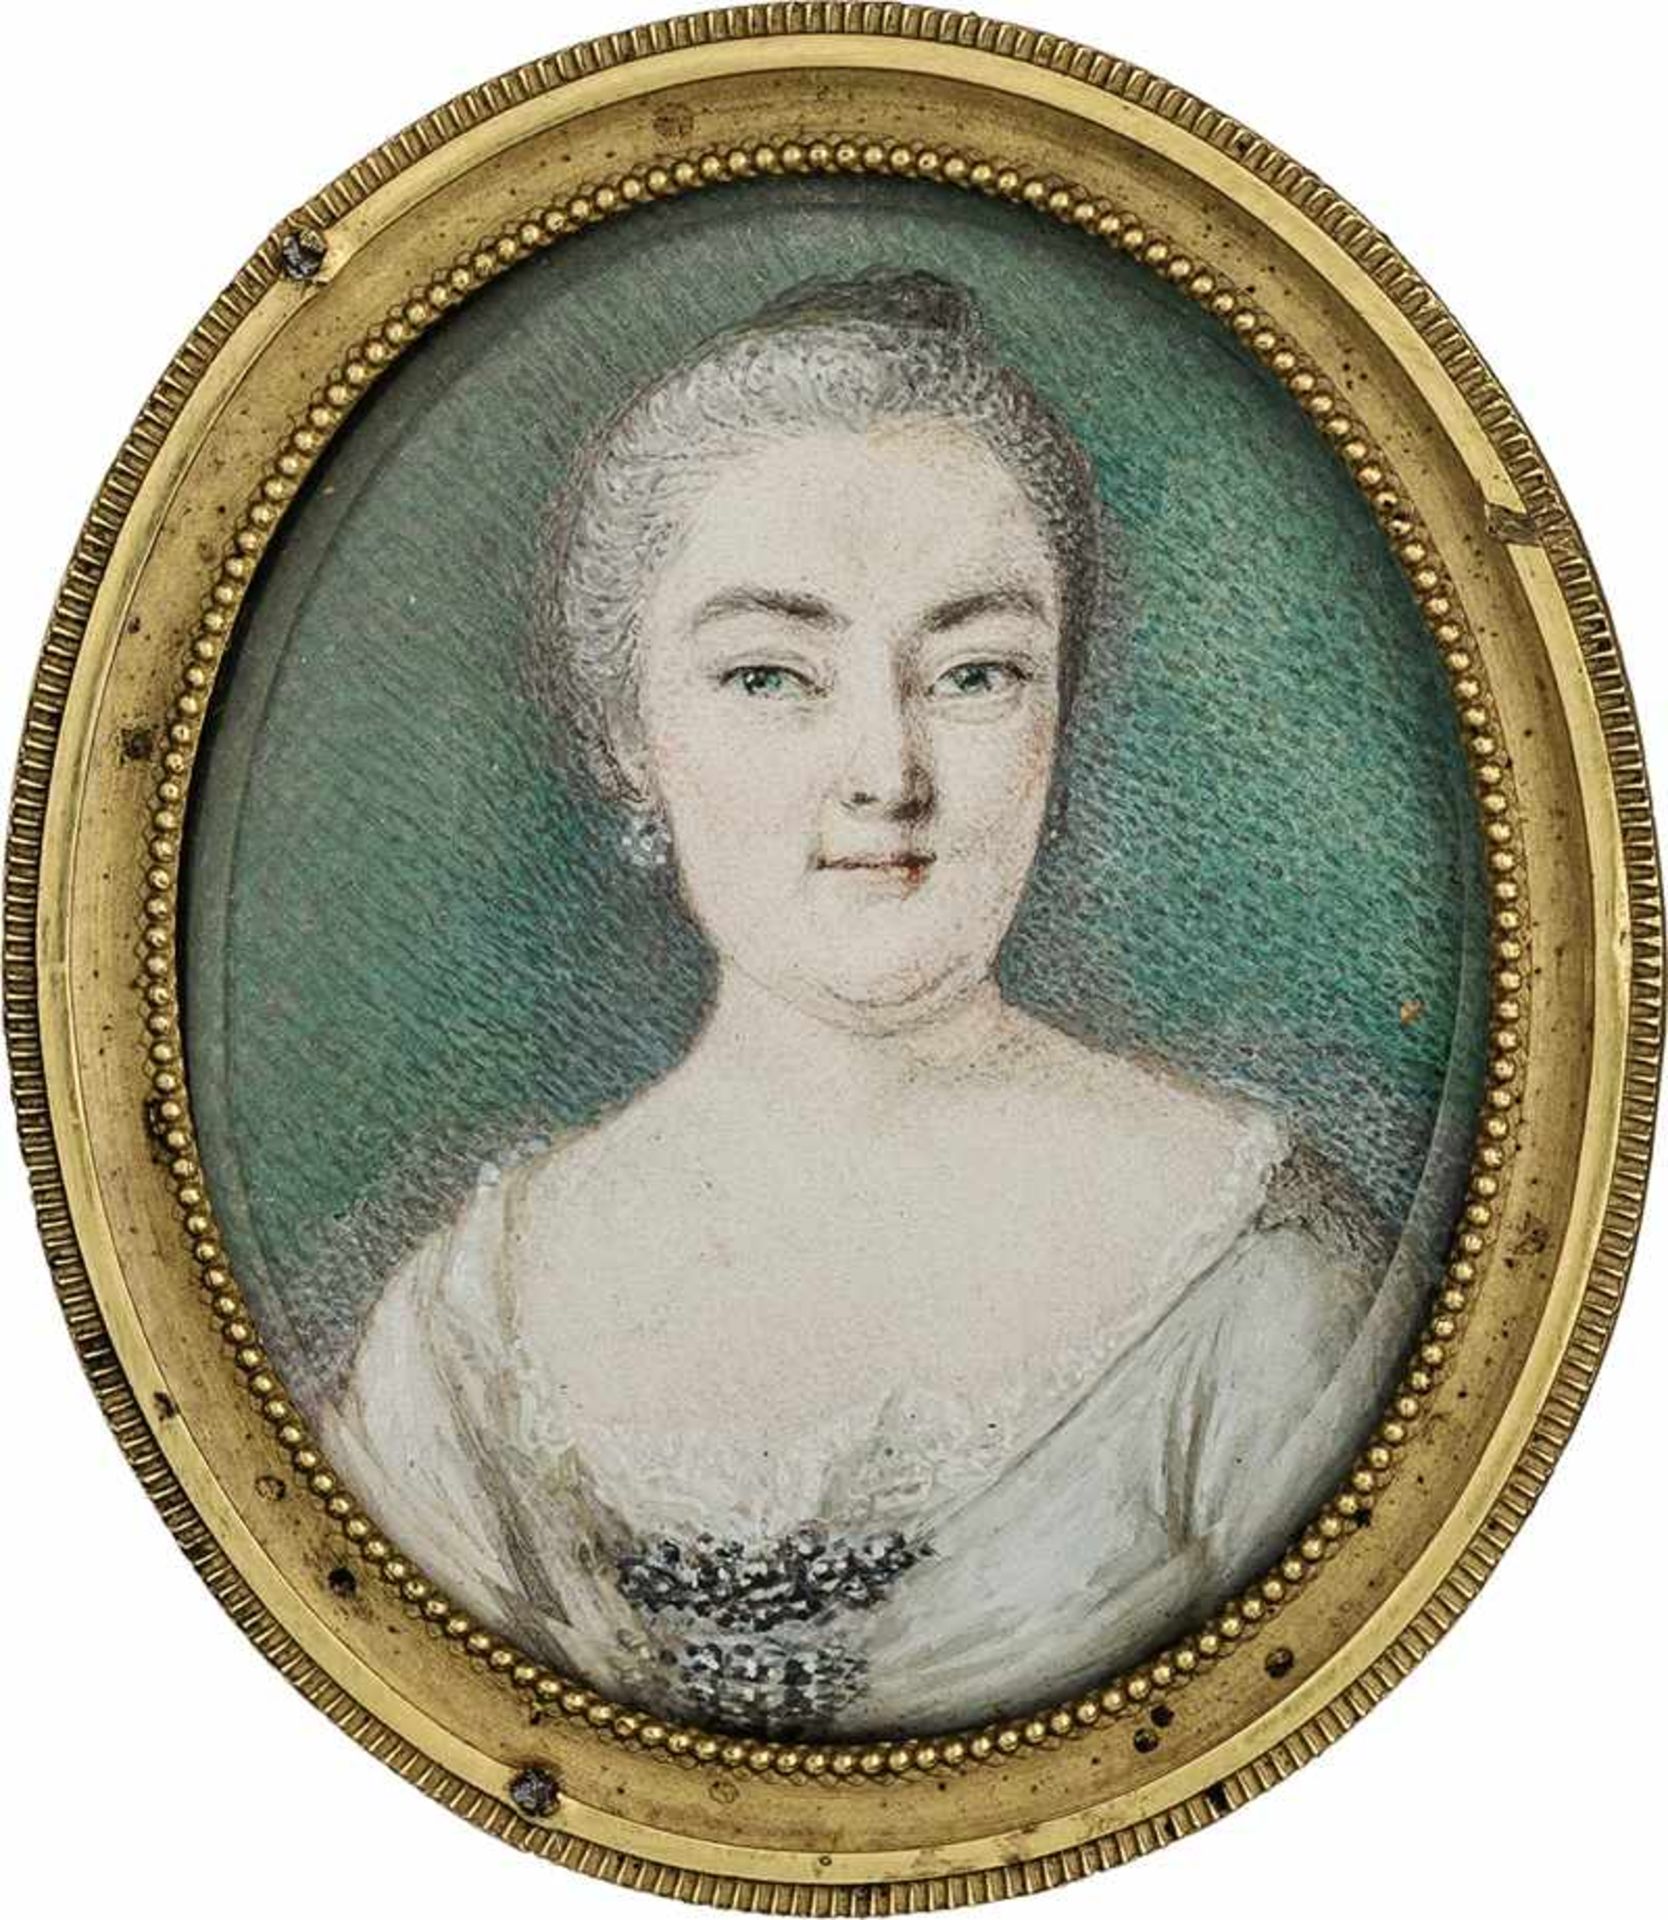 Deutsch: um 1750. Miniatur Portrait der "Großen Landgräfin" Caroline von Hessen-Darmstadt